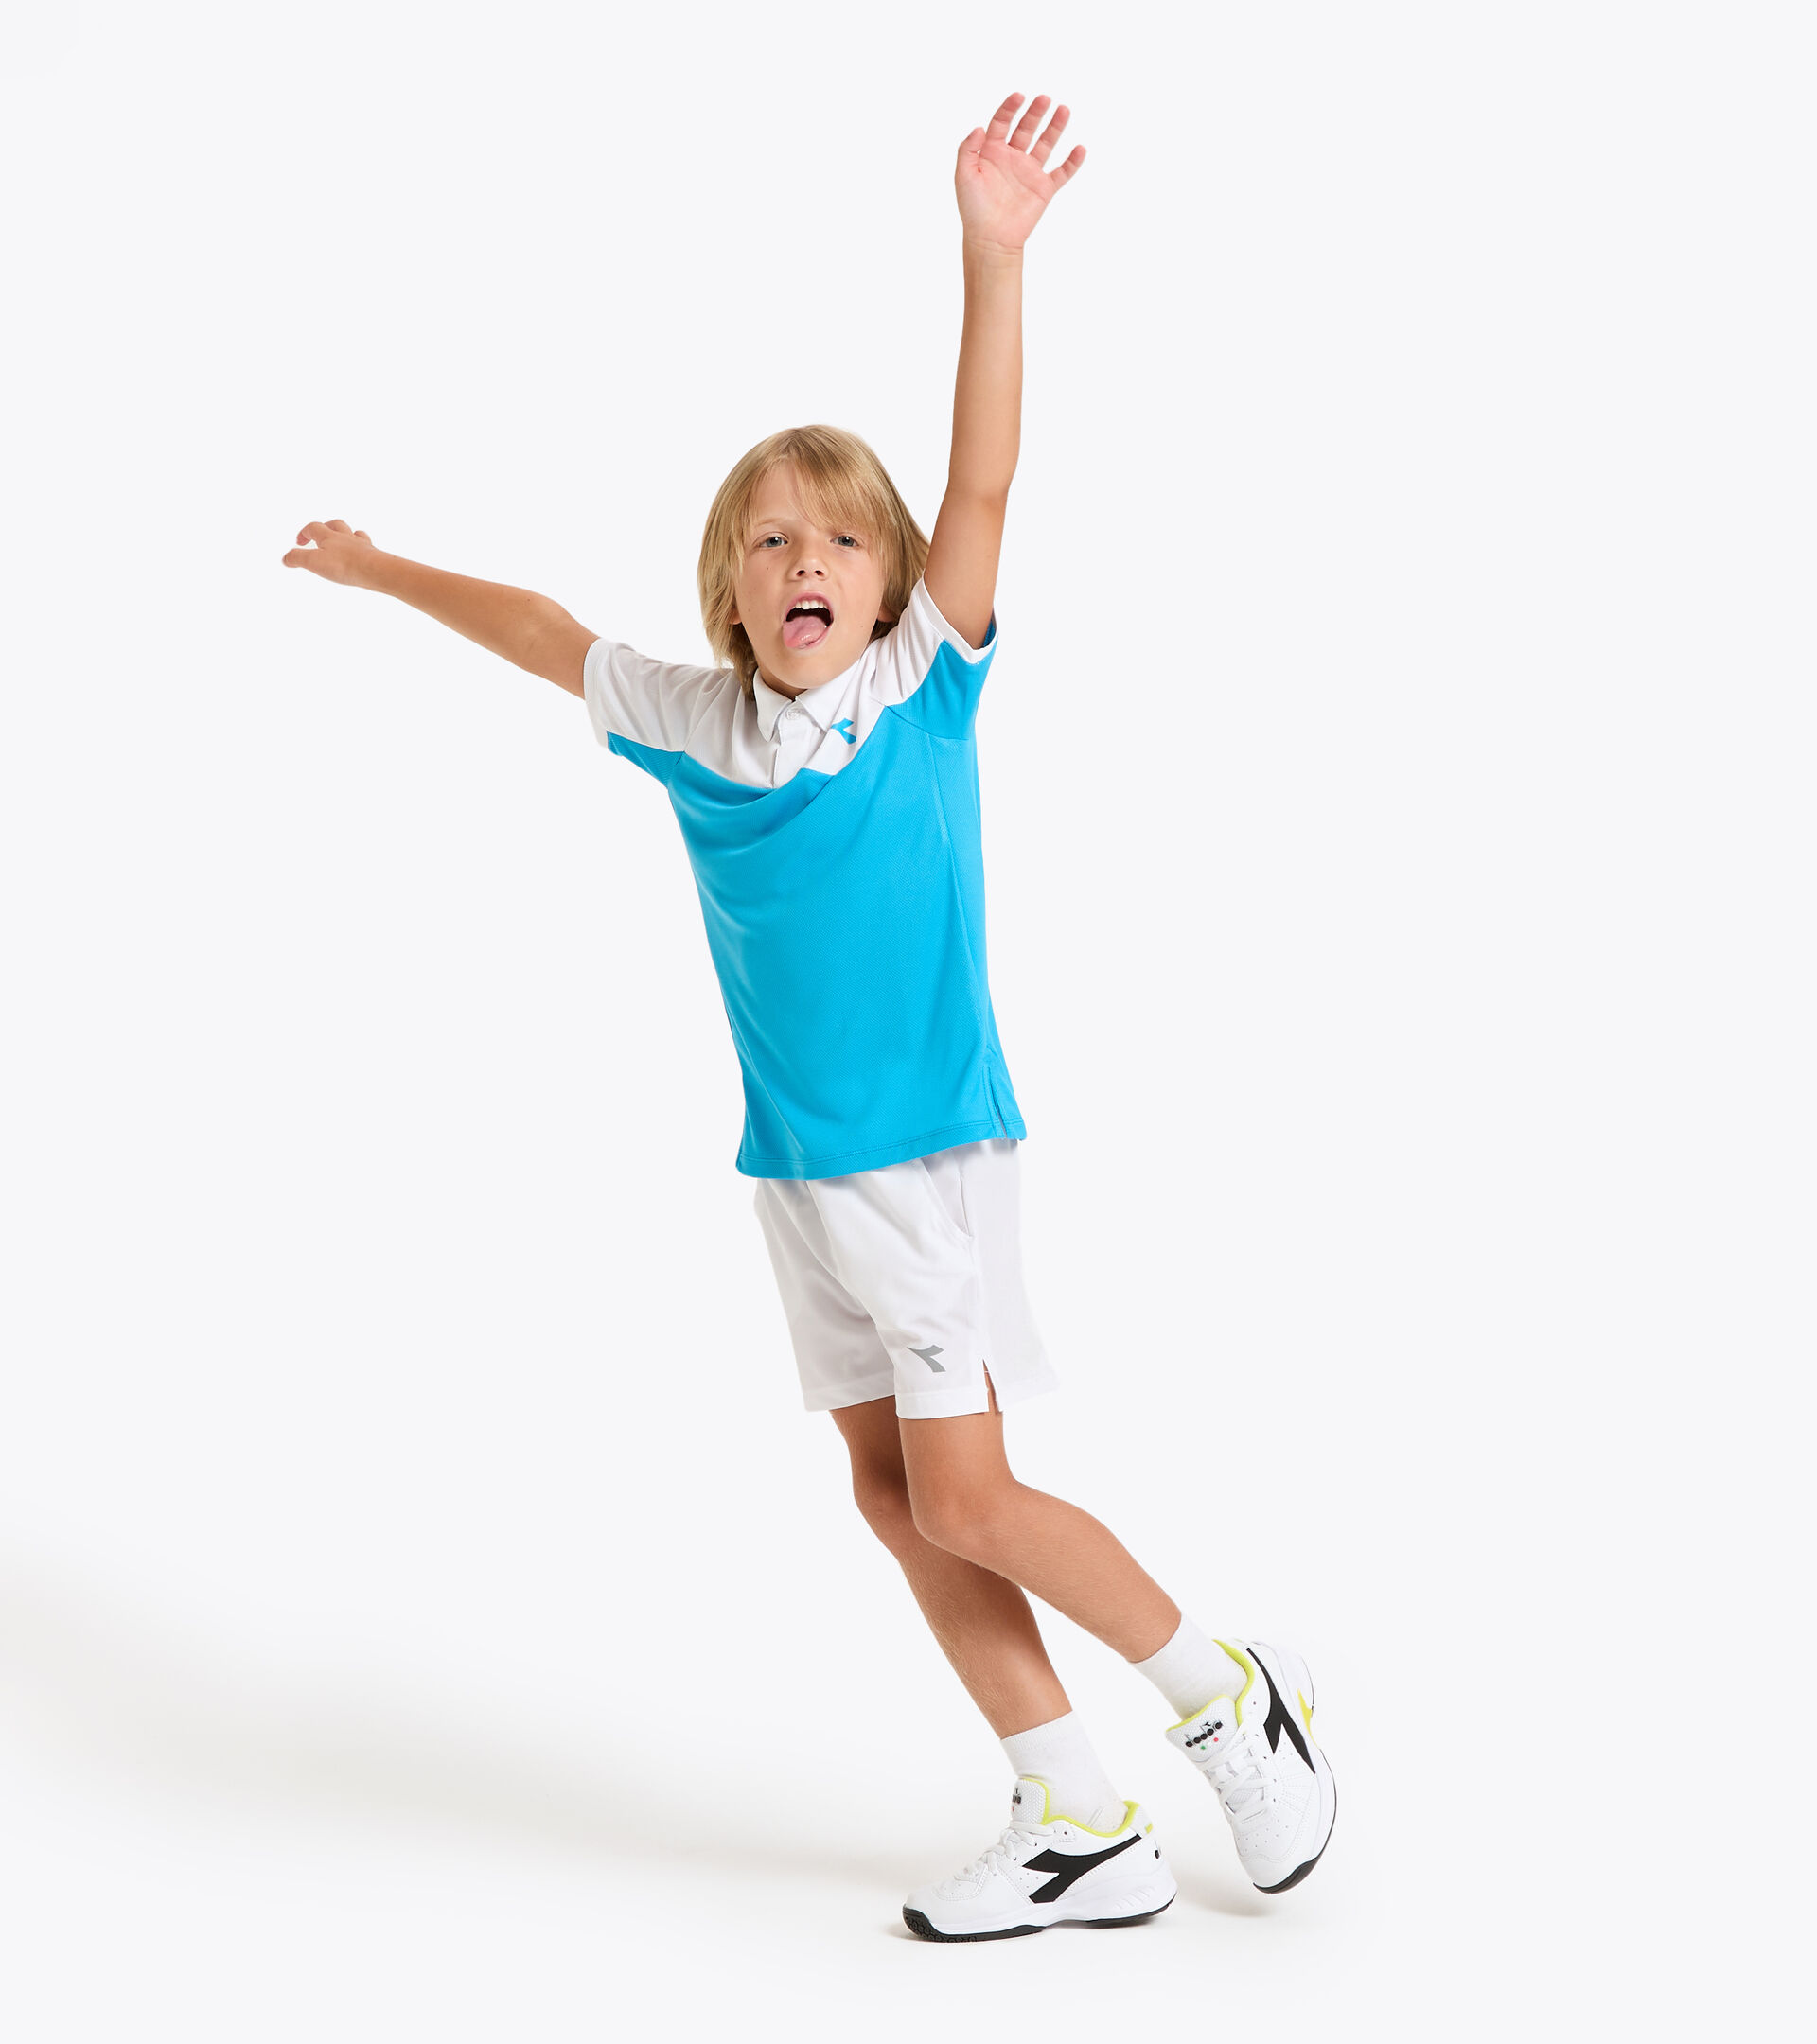 Tennis polo shirt - Junior J. POLO COURT ROYAL FLUO - Diadora